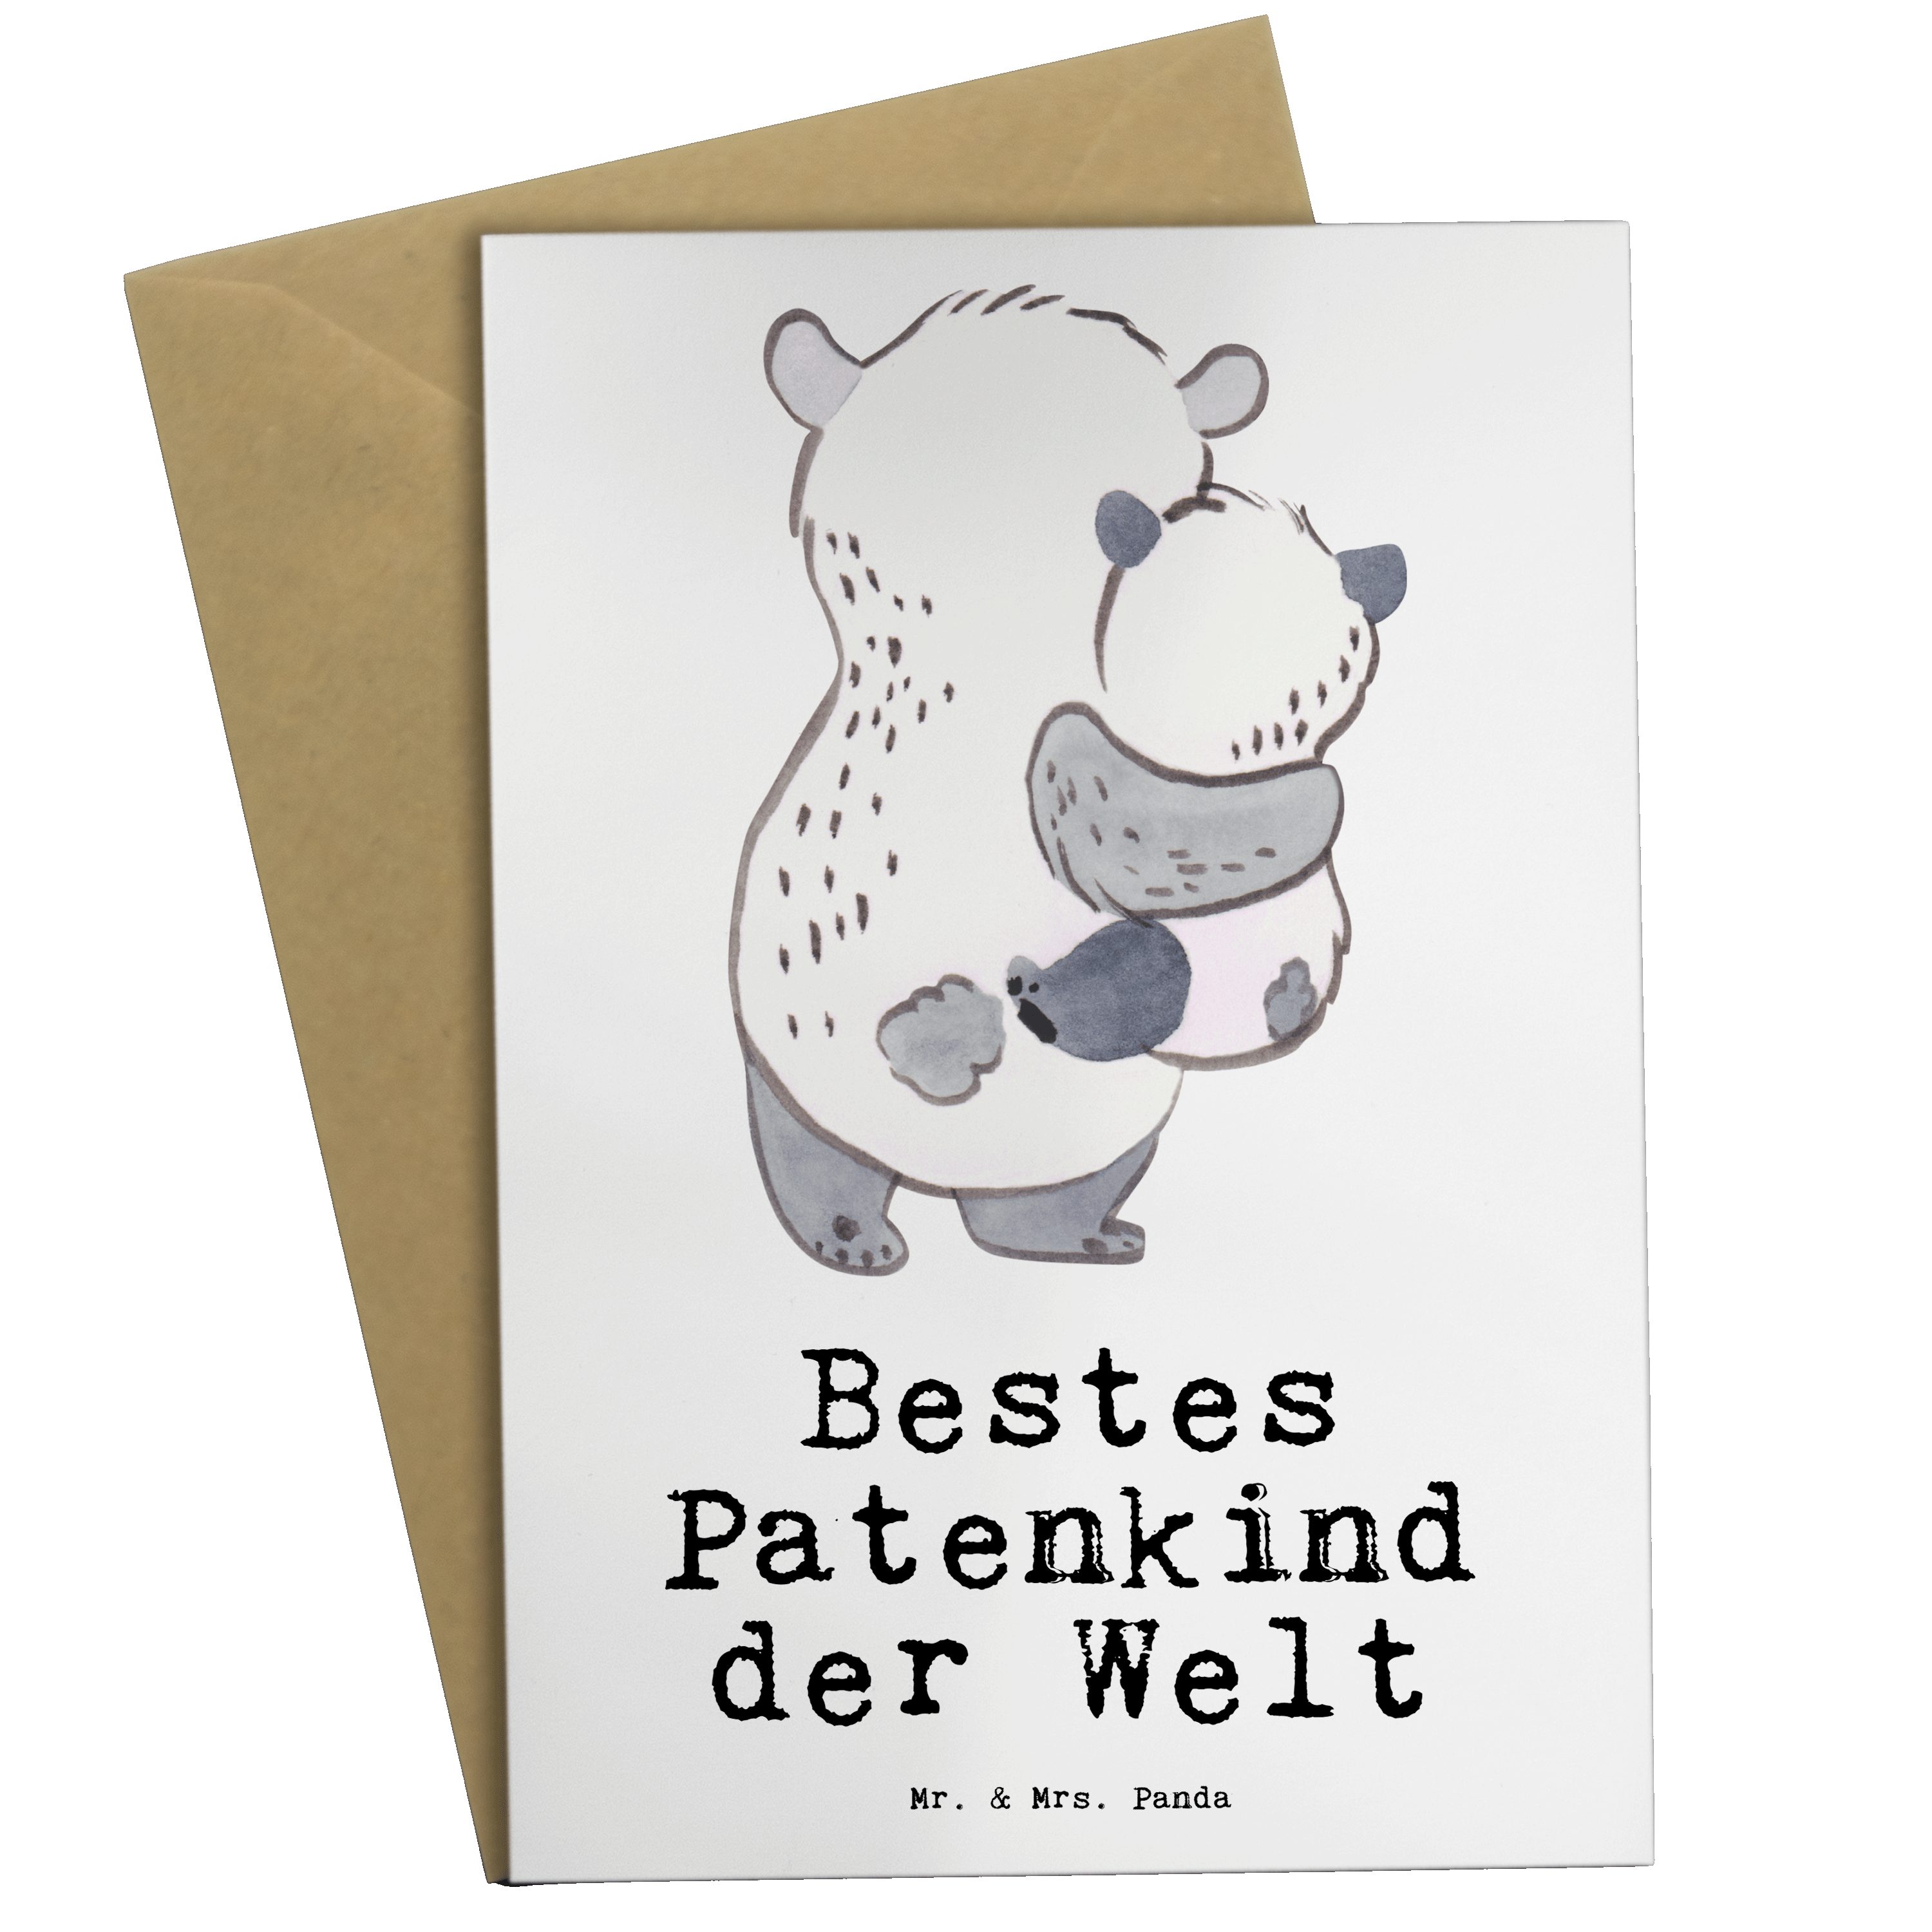 Mr. & Mrs. Panda Grußkarte Panda Bestes Patenkind der Welt - Weiß - Geschenk, Geburtstagsgeschen